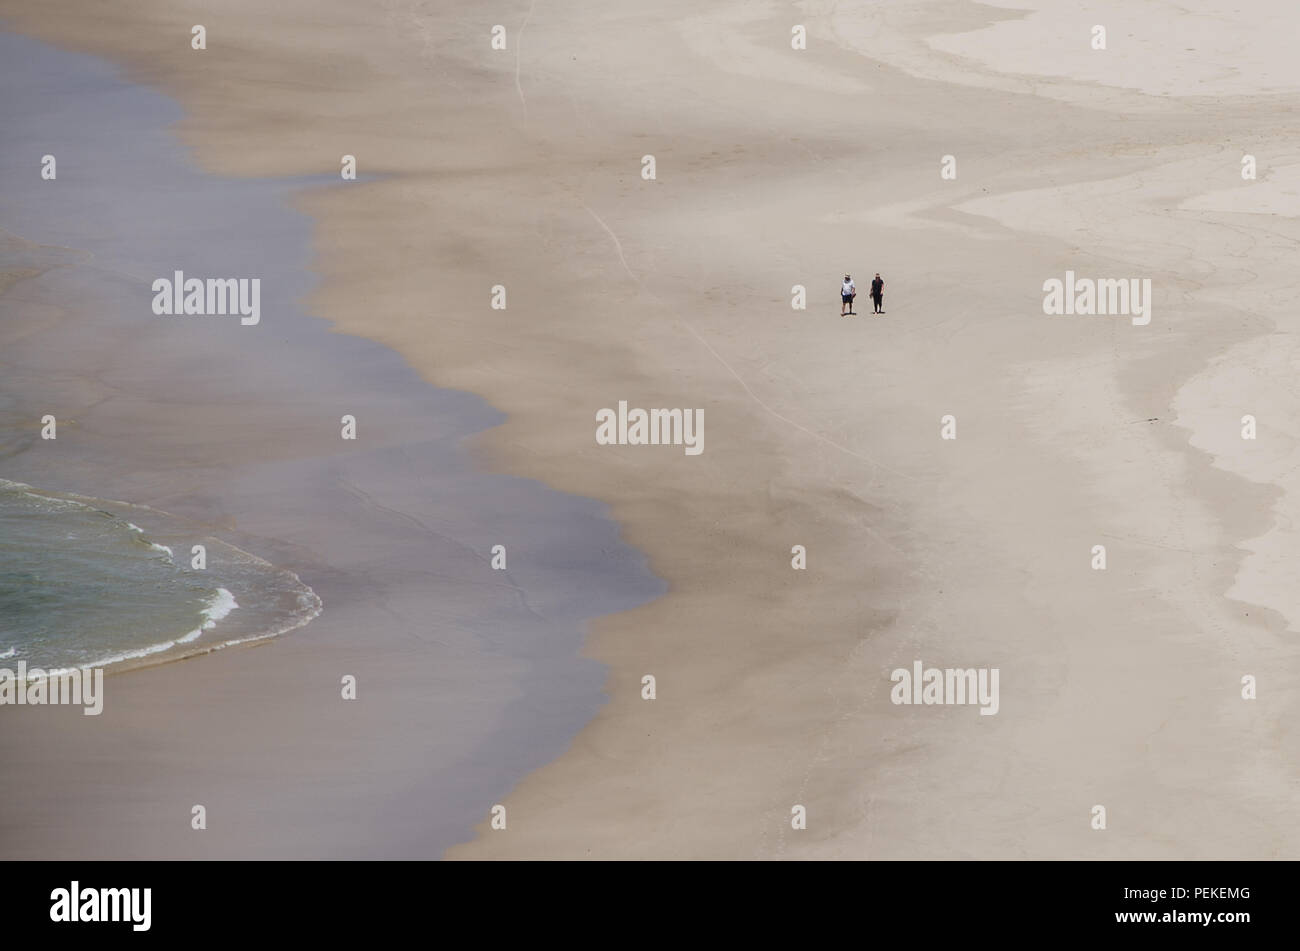 Zwei Menschen laufen entlang der Wasser auf leeren Strand, Tallow Beach, Byron Bay, New South Wales, Australien. Paare friedliche Einsamkeit auf einsamen Strand. Stockfoto